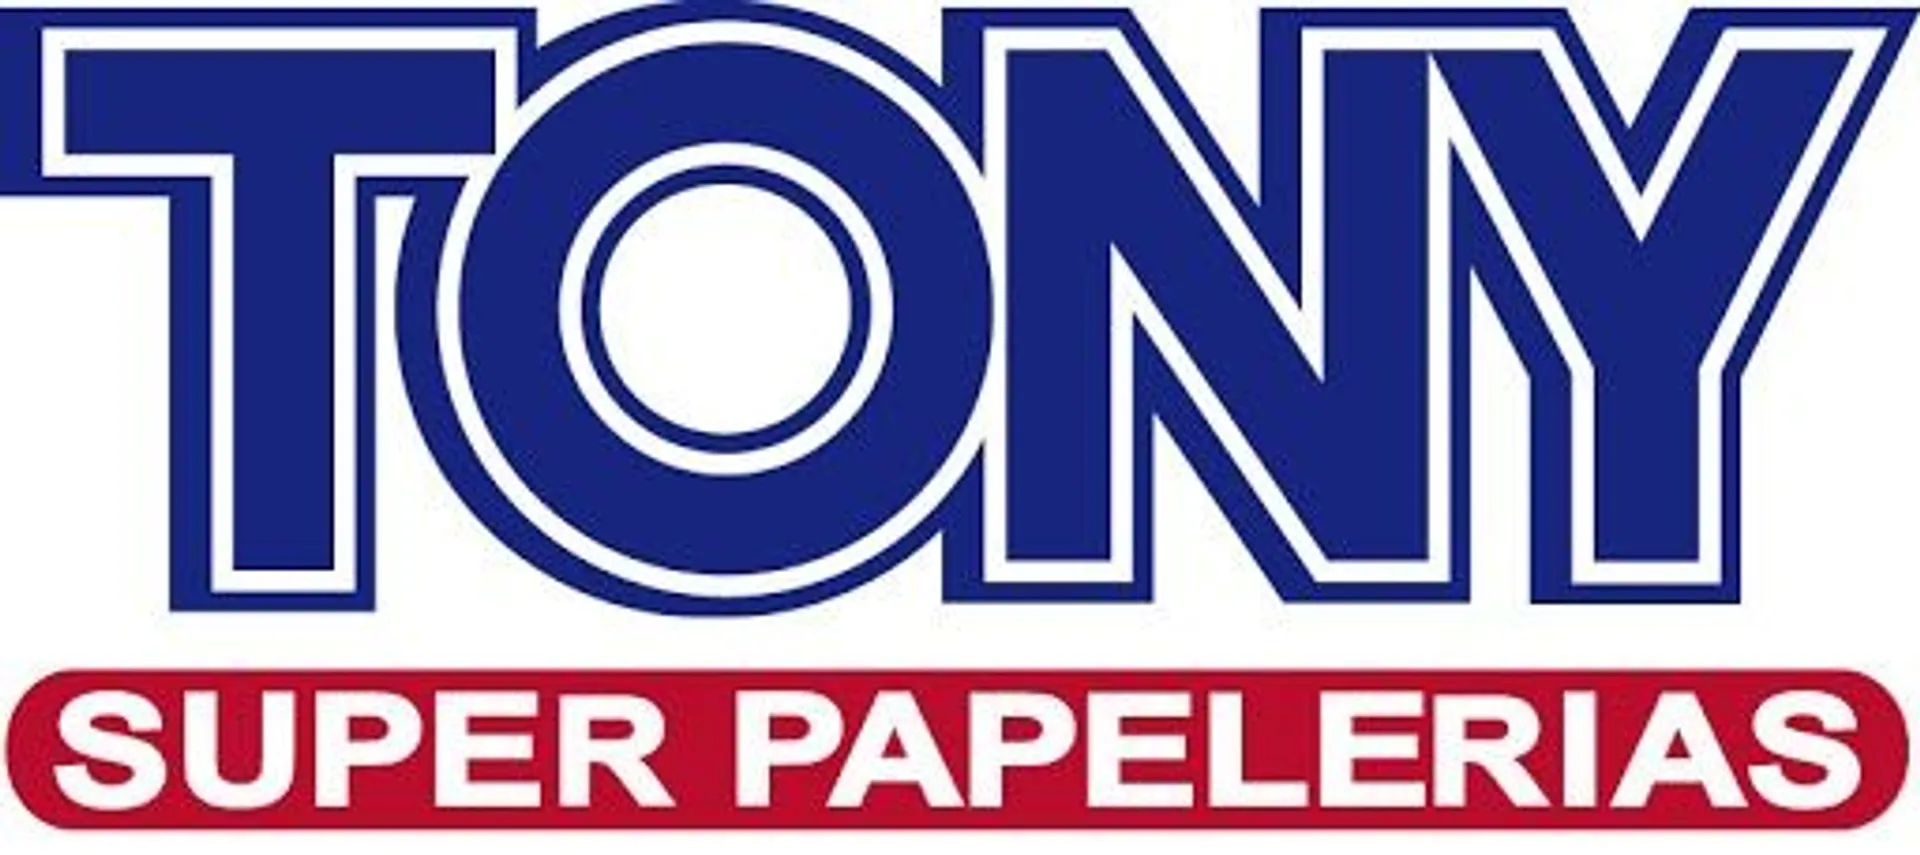 TONY SUPER PAPELERÍAS logo